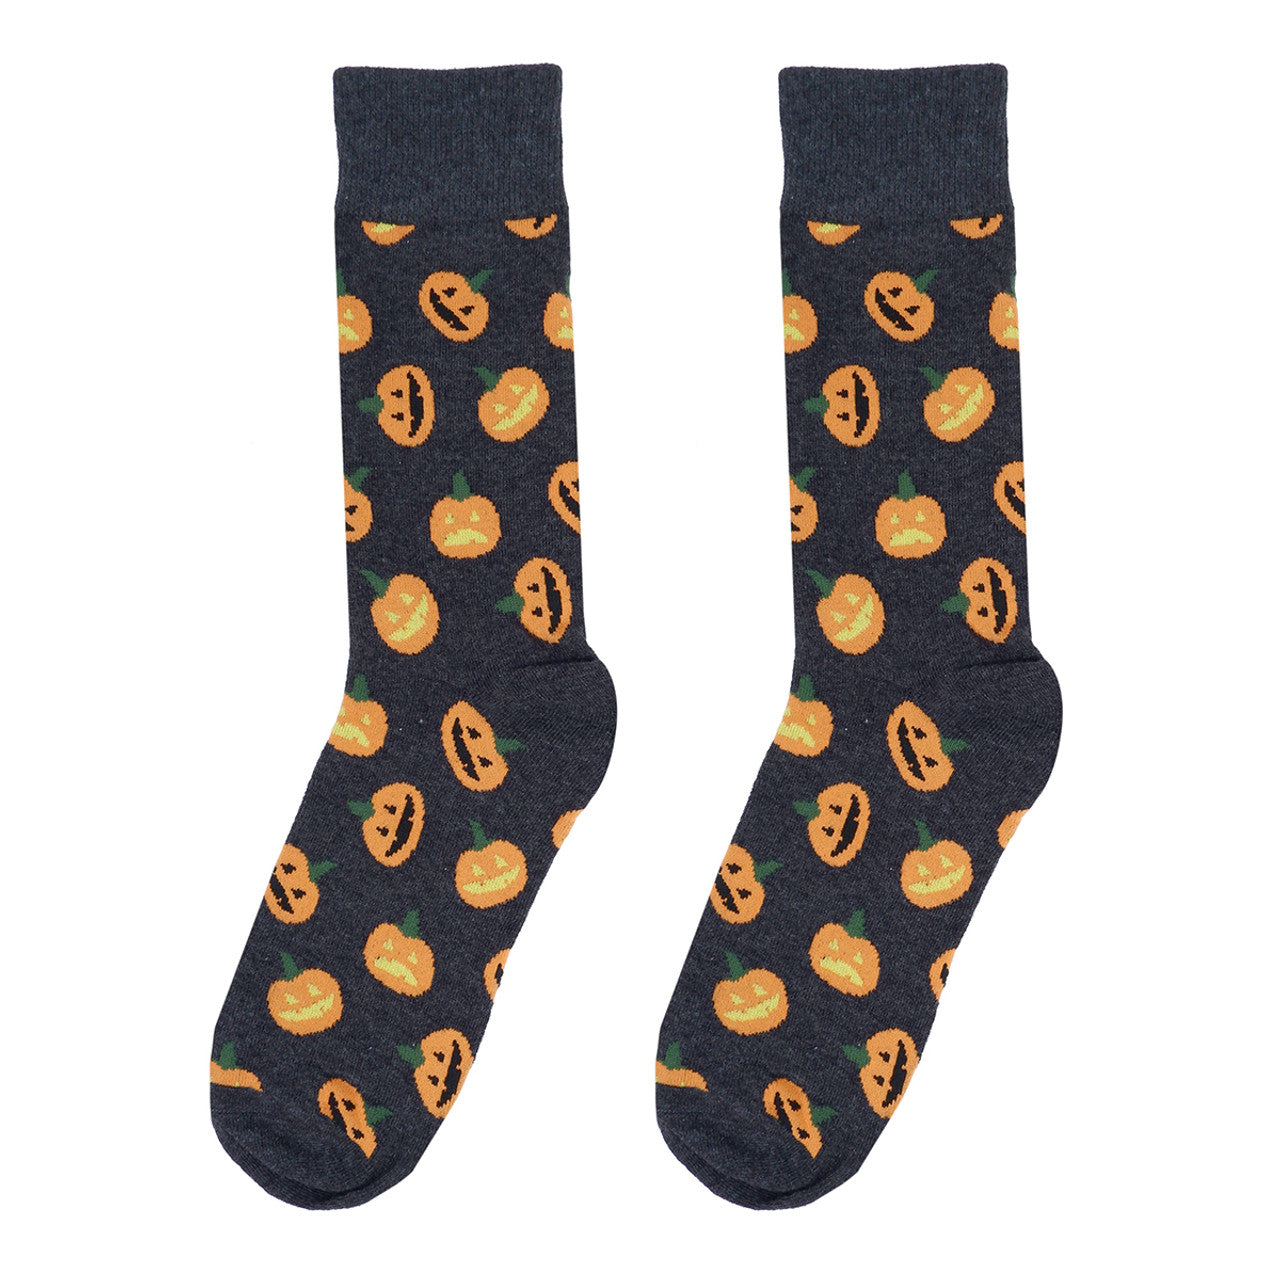 Men's Halloween Pumpkin Crew Socks - Charcoal Gray